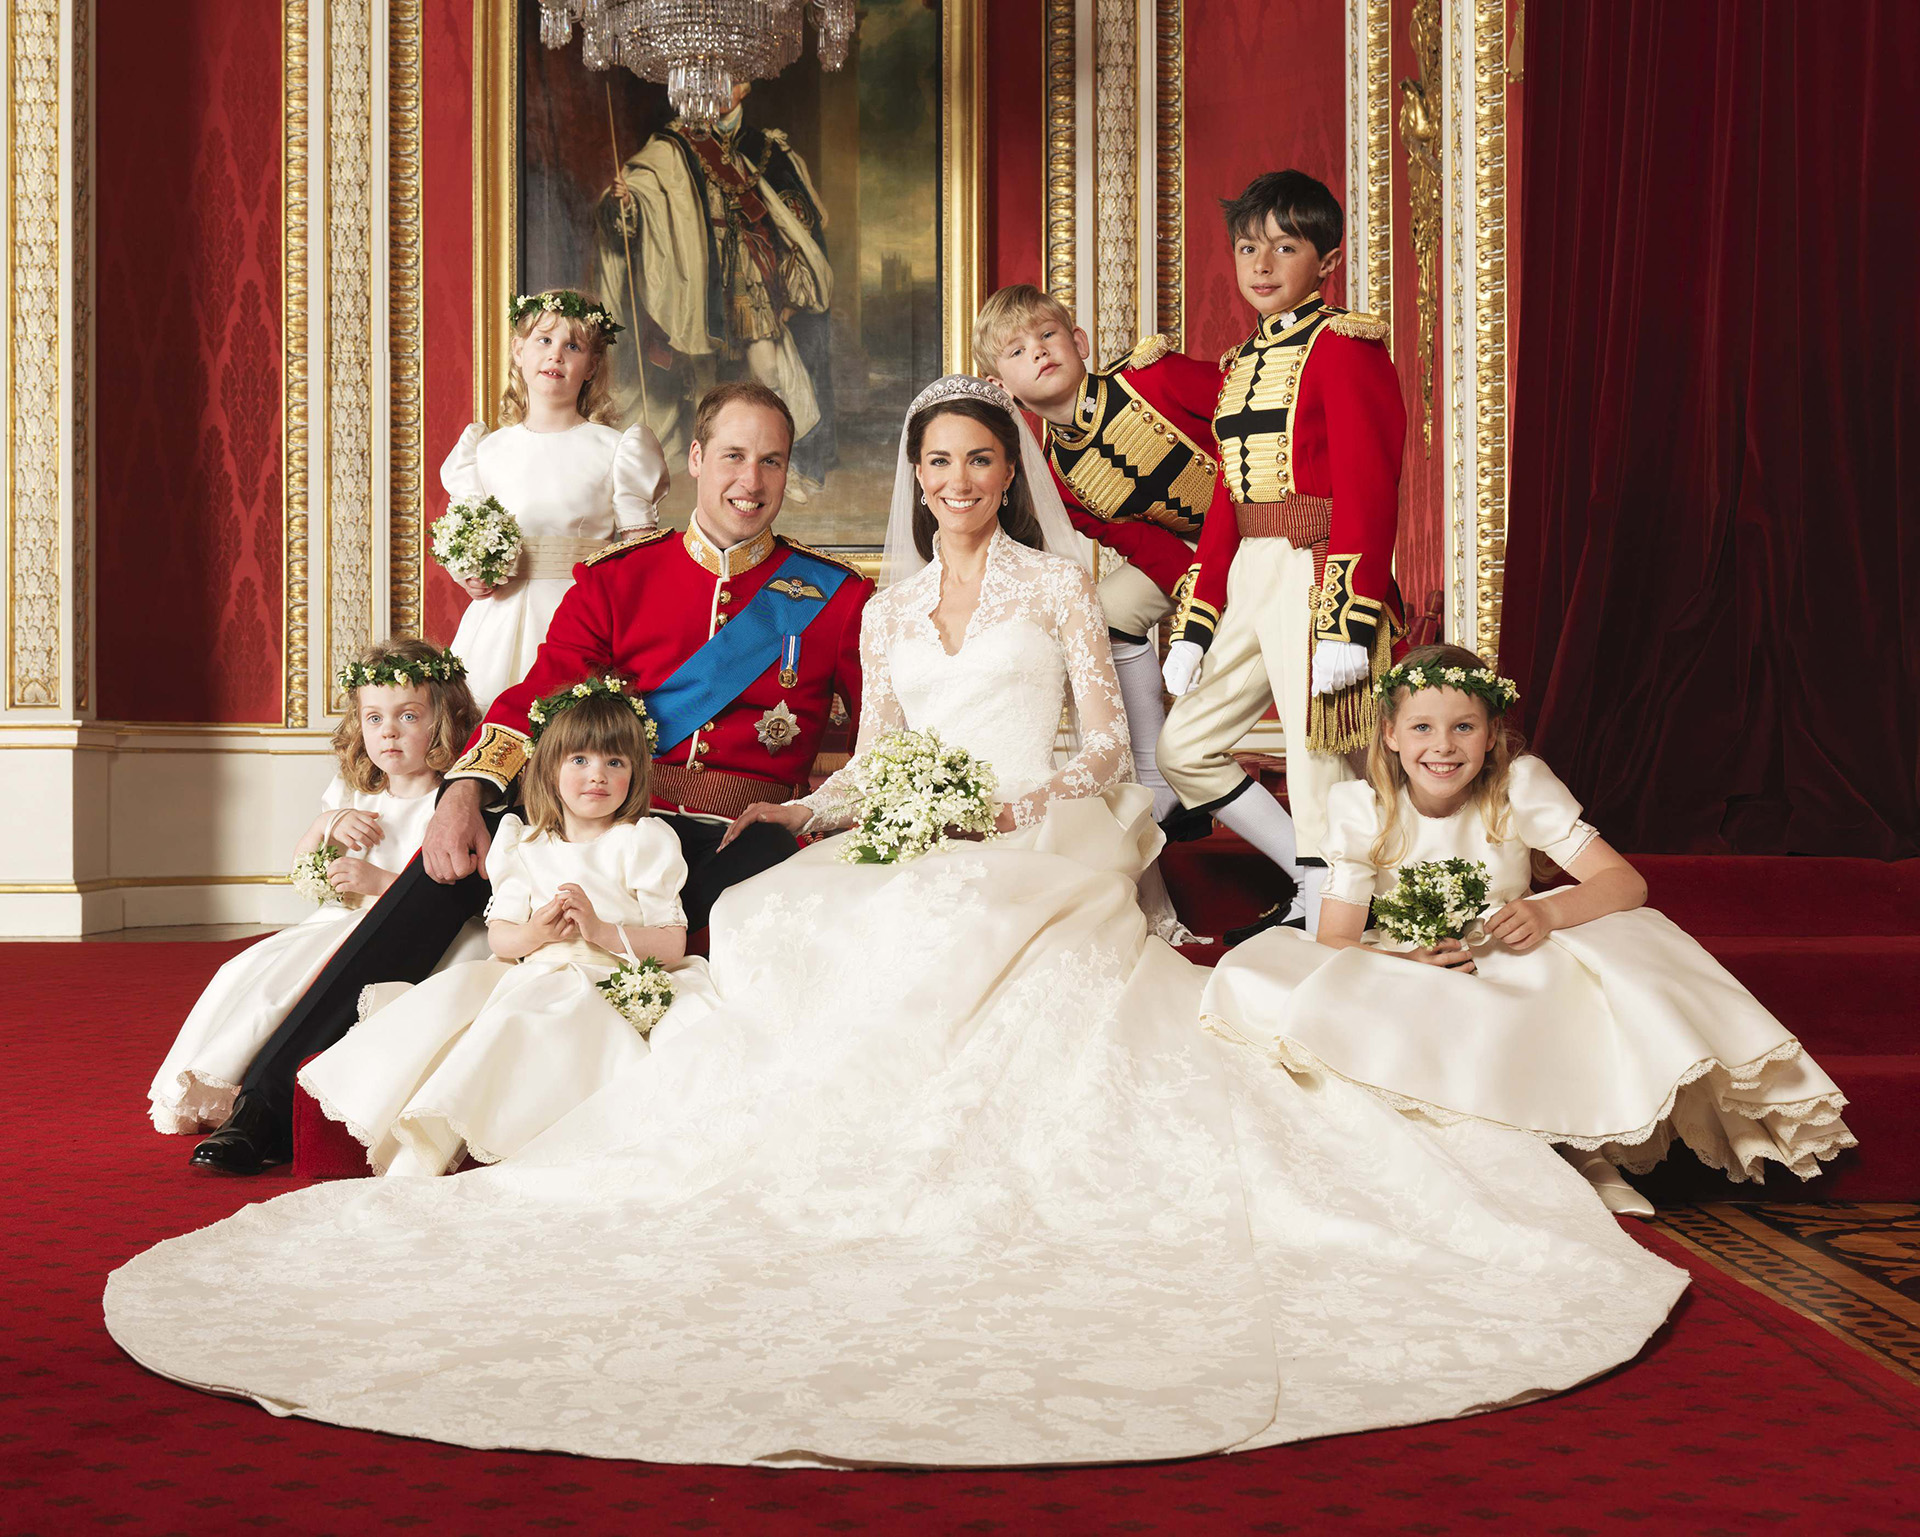 Una década de amor en fotos: la boda de los USD 25 millones y la vida real de Kate Middleton y el príncipe William